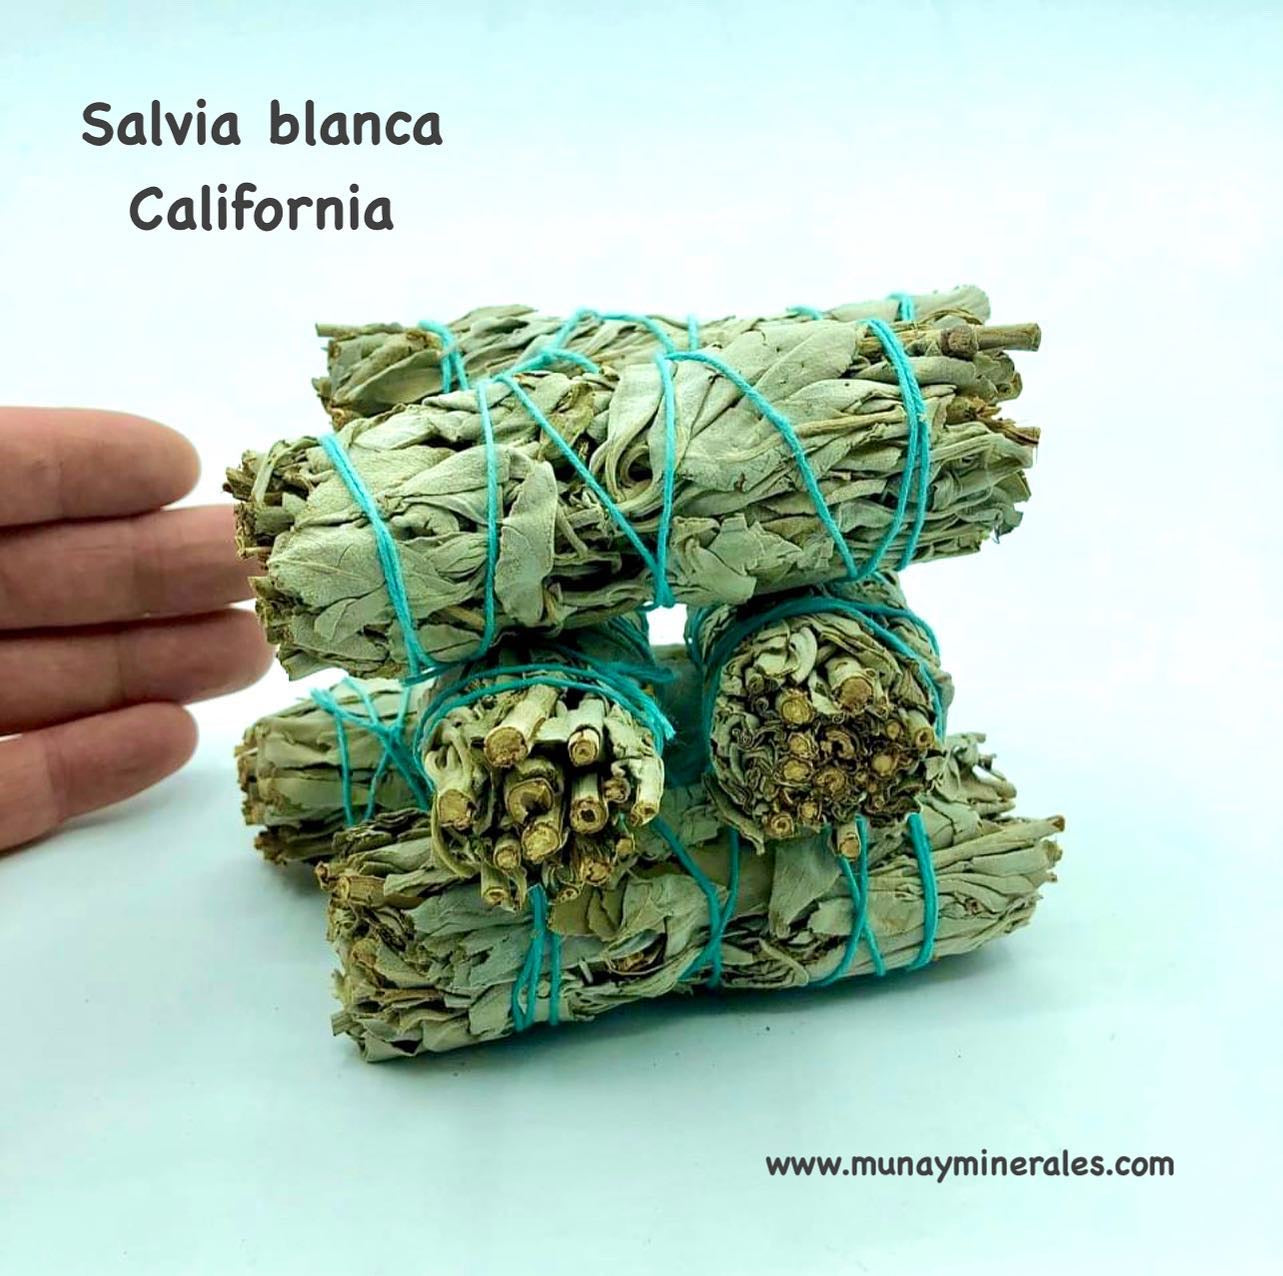 SALVIA BLANCA DE CALIFORNIA LOTE DE 22 UNIDADES